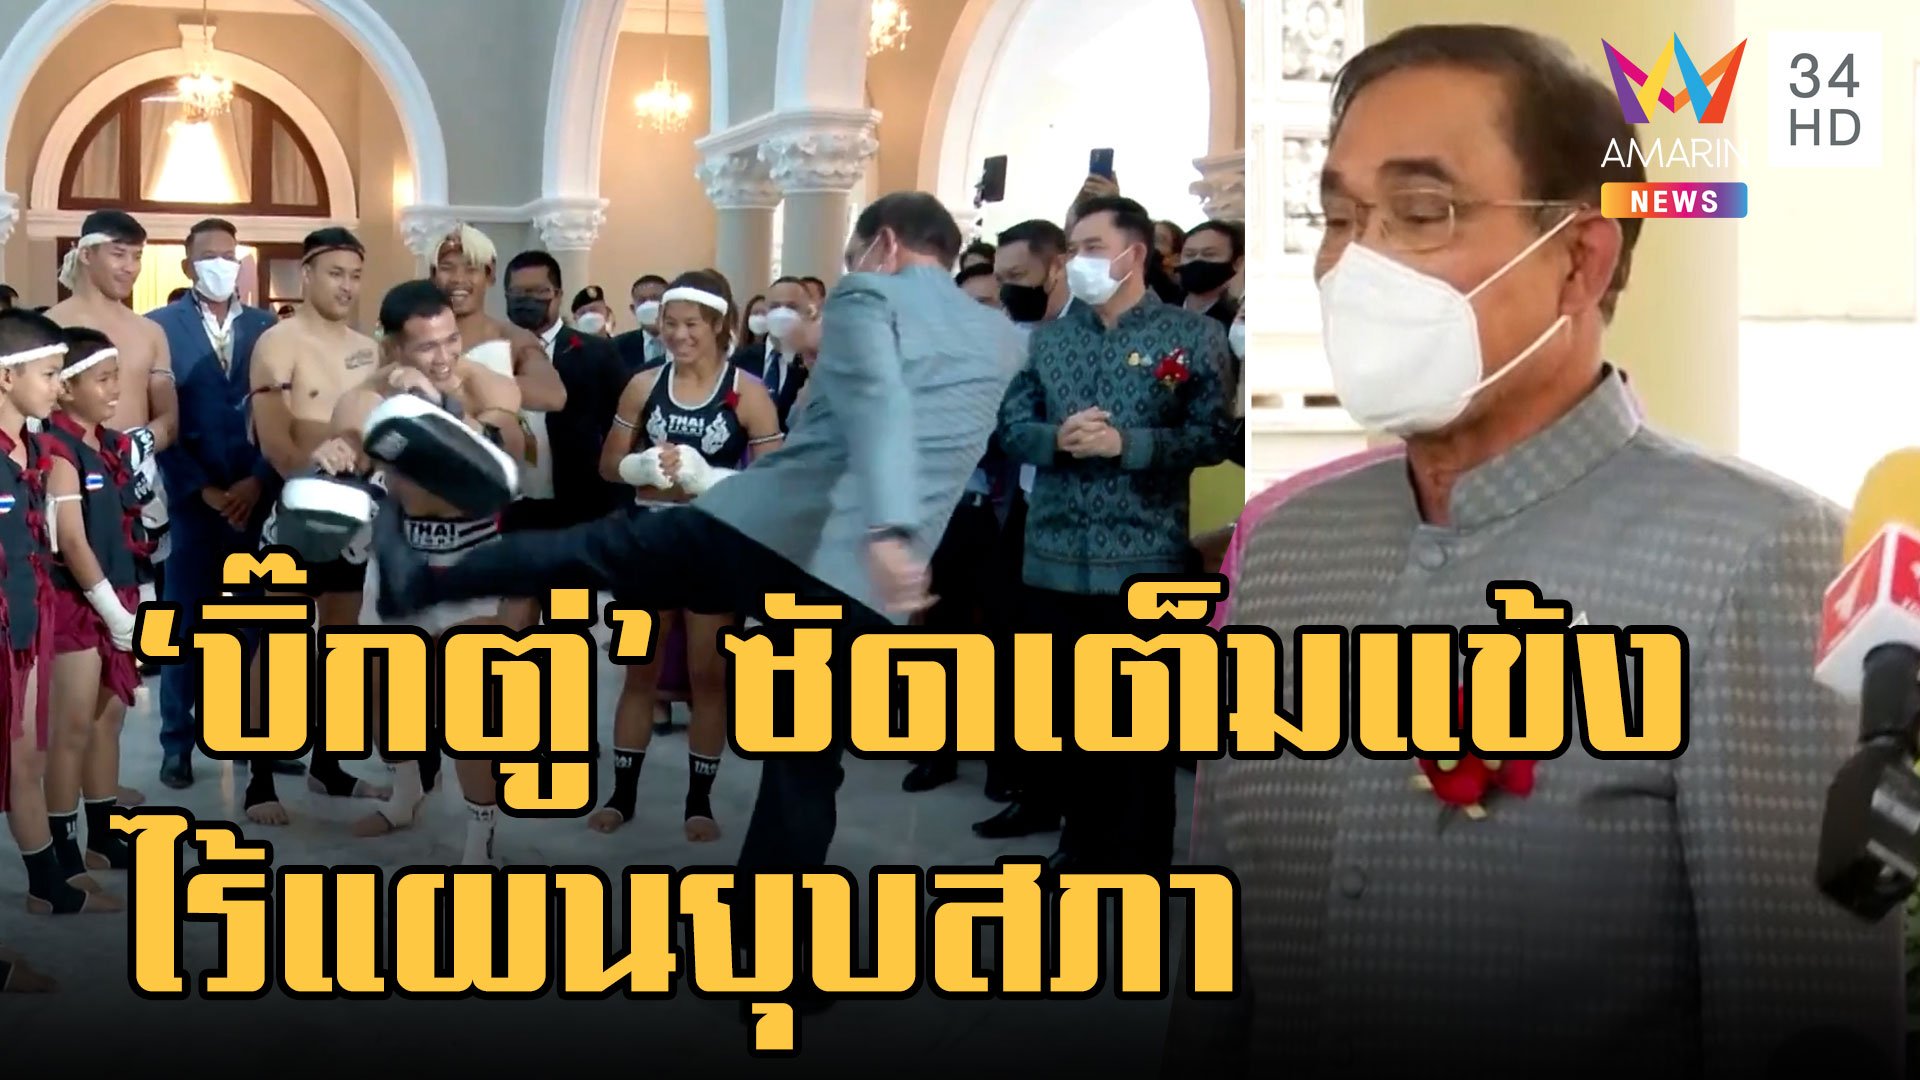 "บิ๊กตู่" ซัดเป้านักมวยไทย ไร้แผนยุบสภา  | ข่าวเที่ยงอมรินทร์ | 1 ก.พ. 66 | AMARIN TVHD34